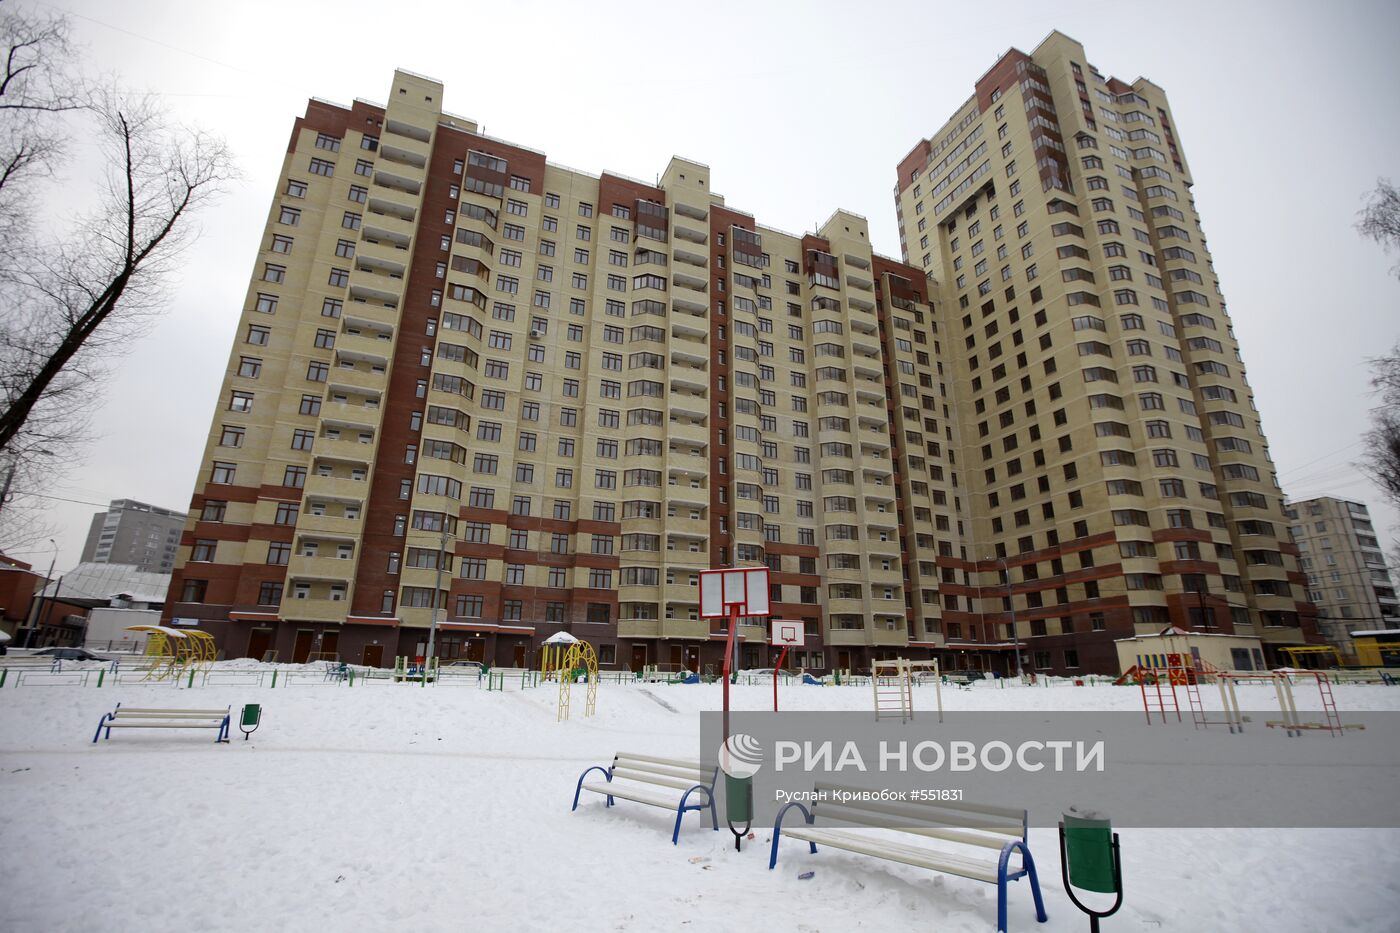 Дом с квартирами для госслужащих на ул. Петрозаводской в Москве